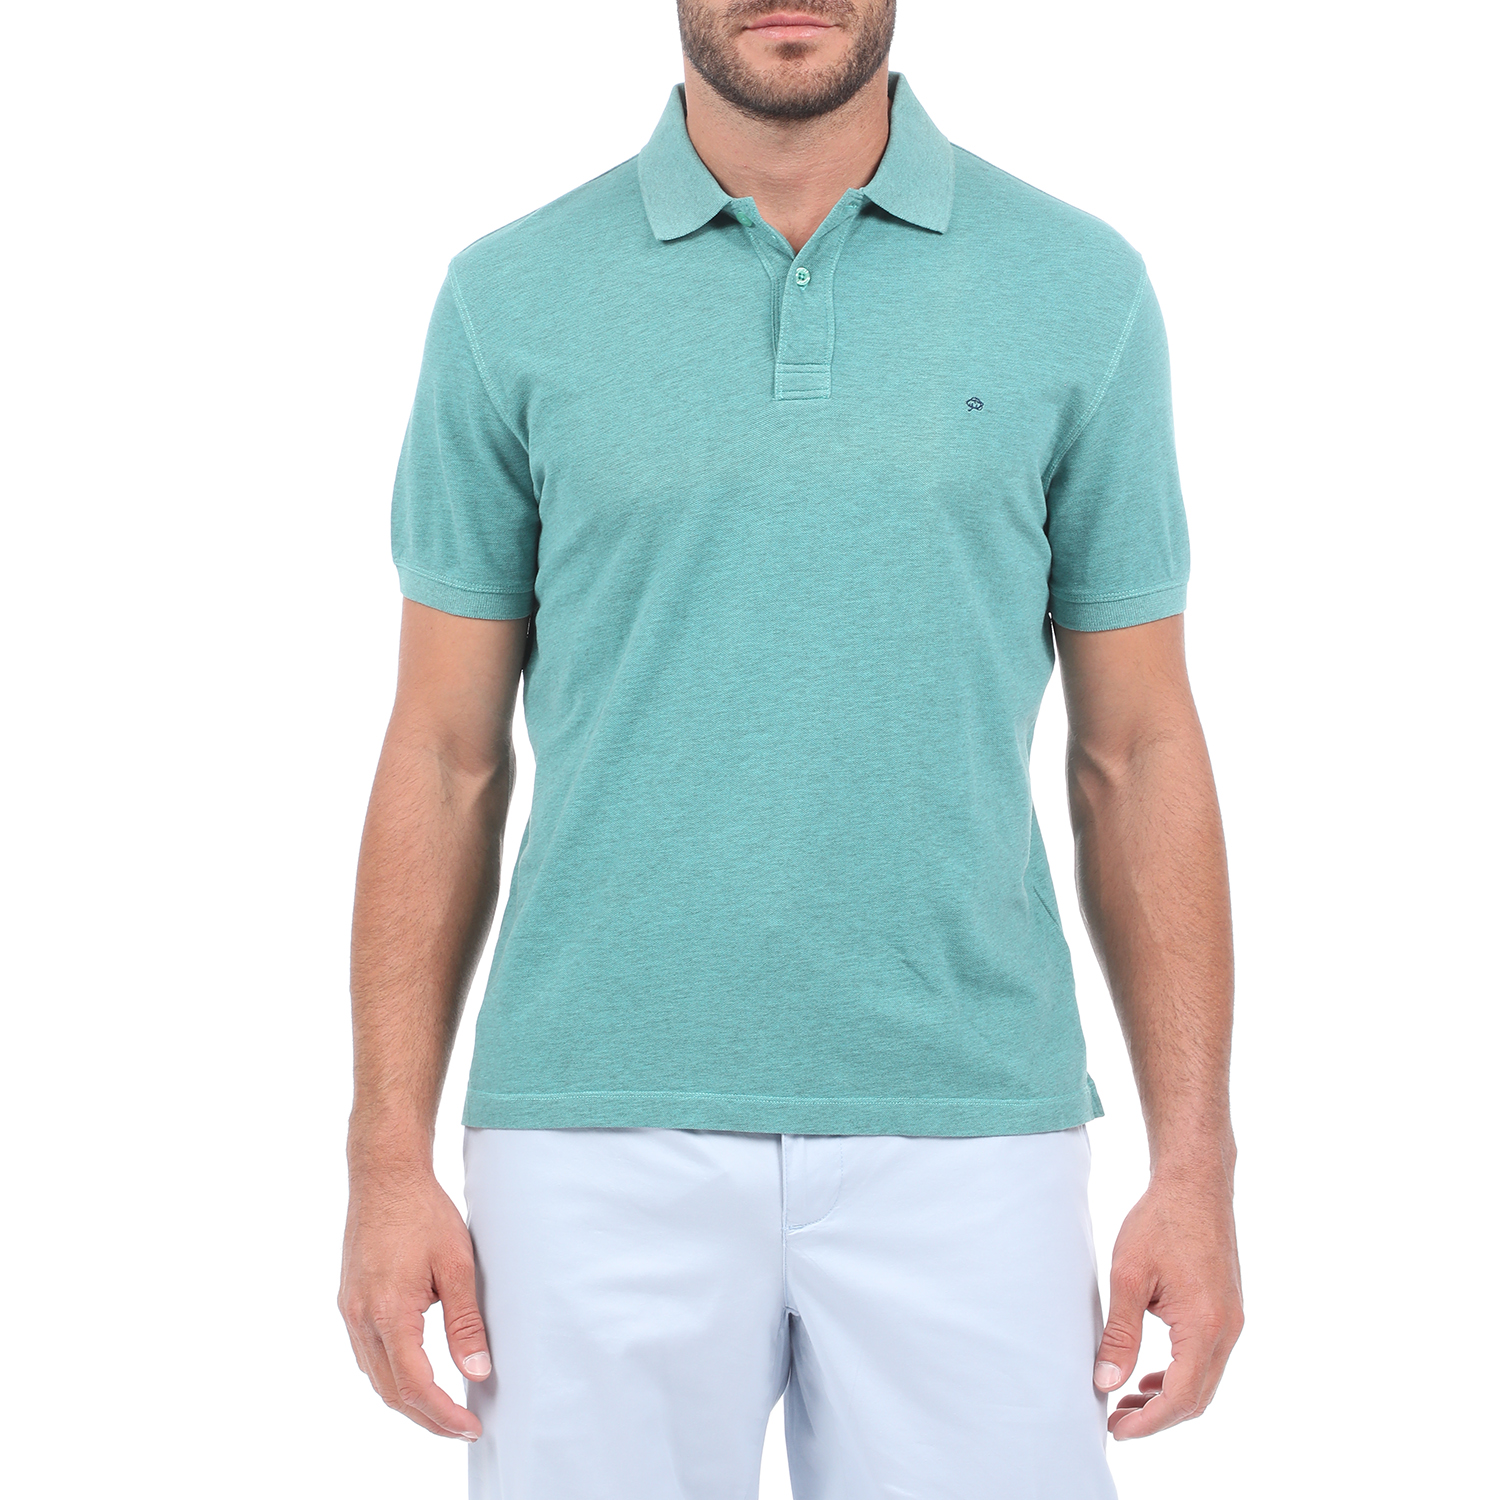 Ανδρικά/Ρούχα/Μπλούζες/Πόλο MARTIN & CO - Ανδρική polo μπλούζα MARTIN & CO πράσινη